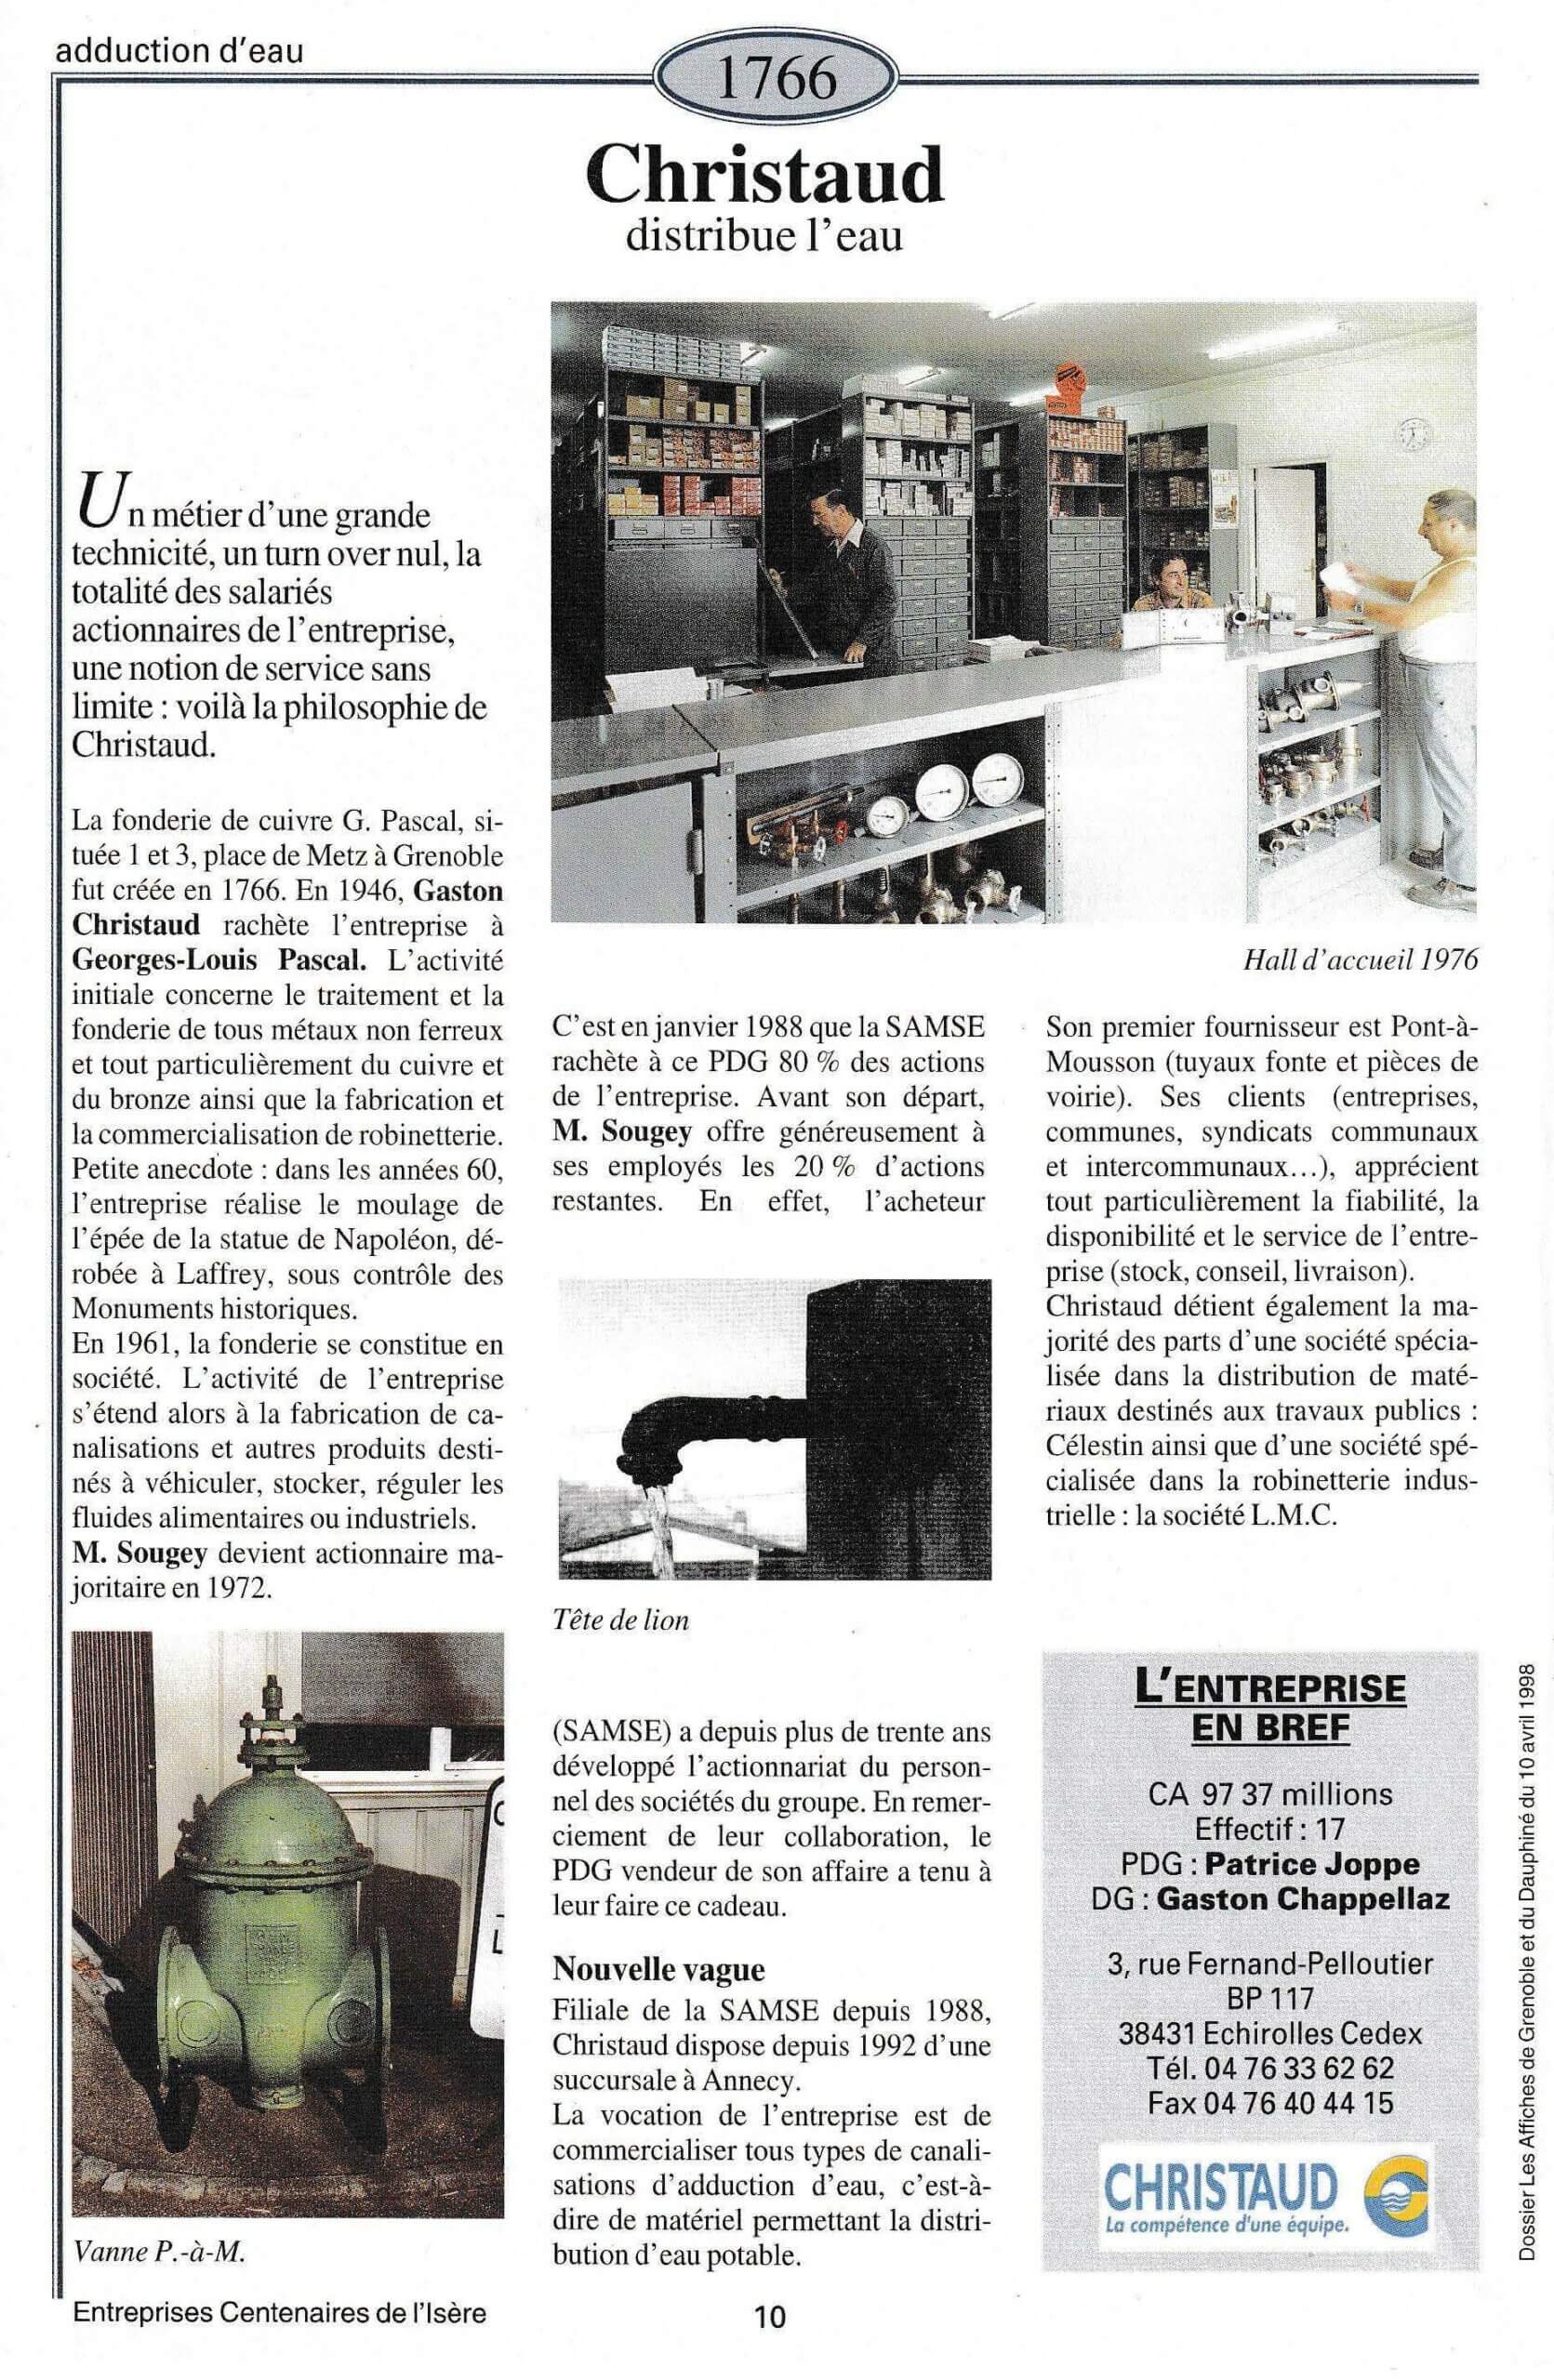 Christaud - fiche du supplément "Entreprises centenaires en Isère", publié par Les affiches de Grenoble et du Dauphiné, juin 1998.